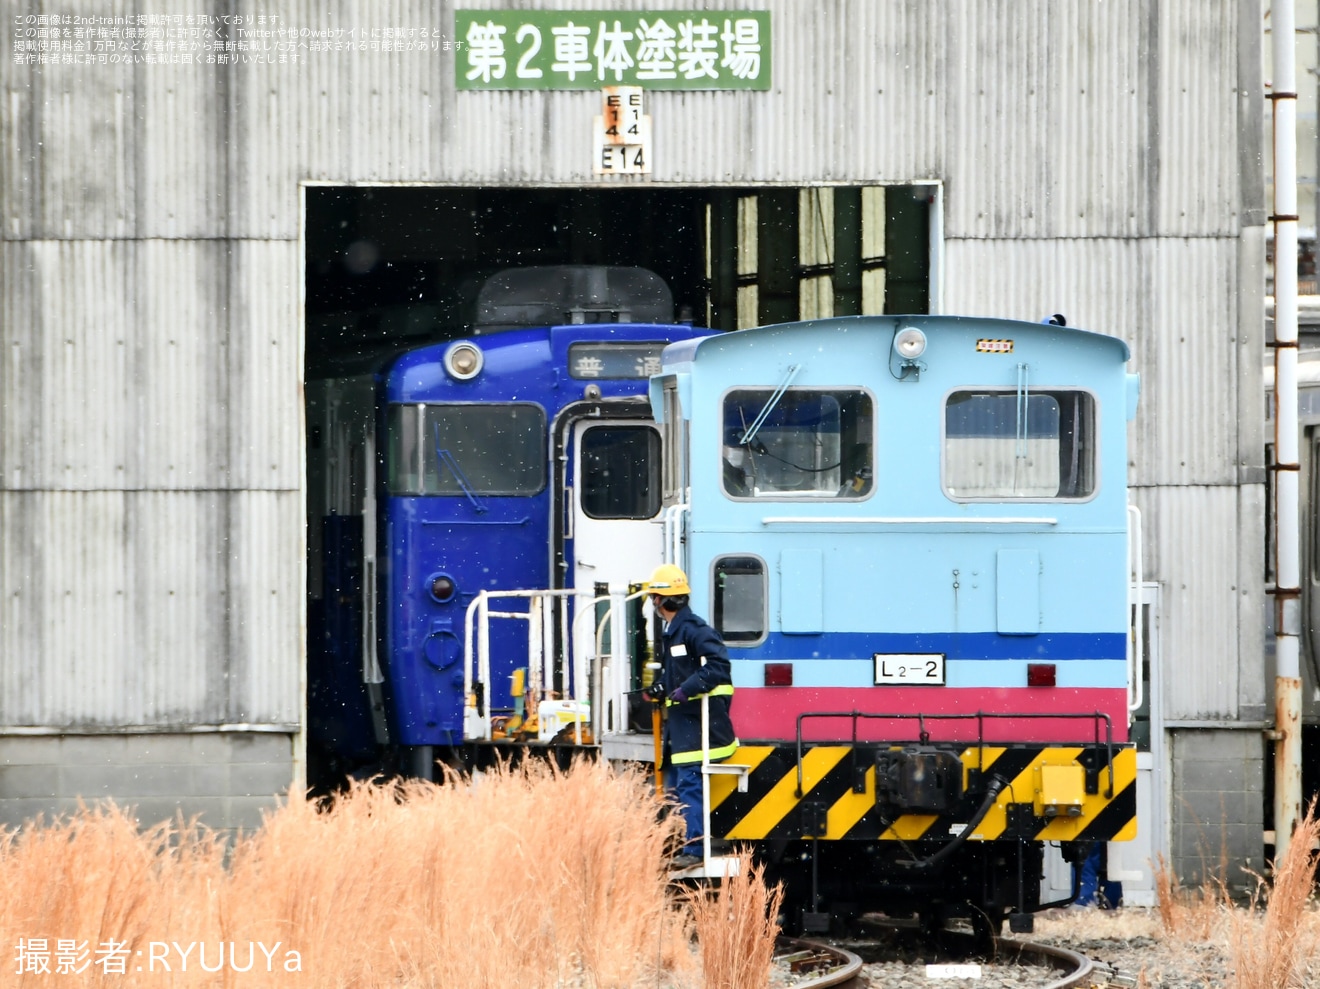 【JR東】越乃 Shu*kuraの3号車であるキハ40-552が再塗装の拡大写真